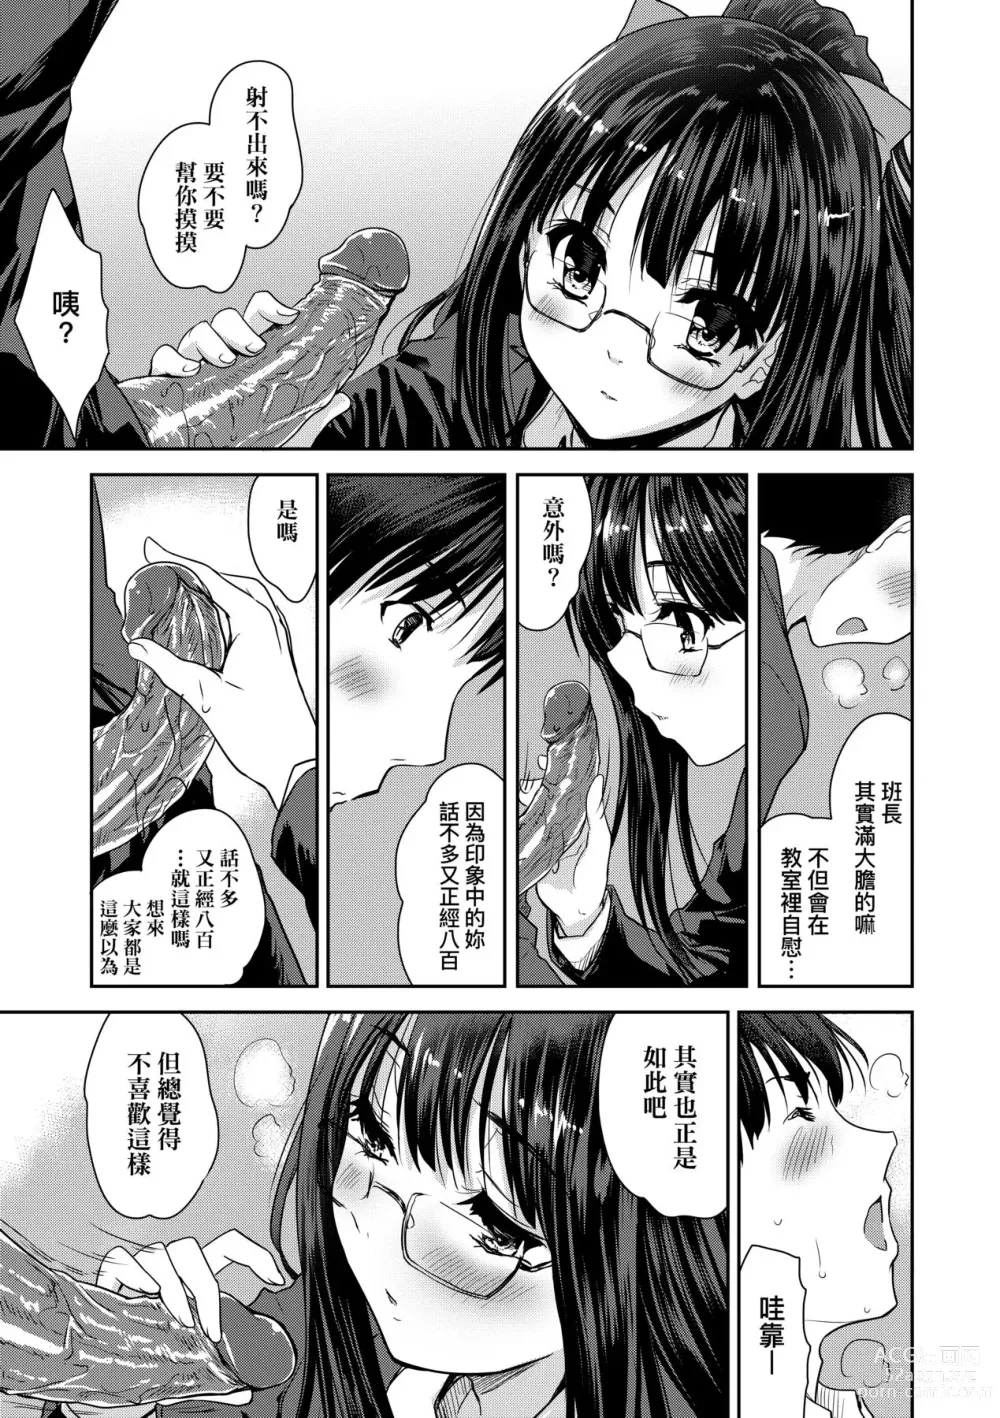 Page 186 of manga 把玩妳綿軟歐派並含入口中品嘗 (decensored)